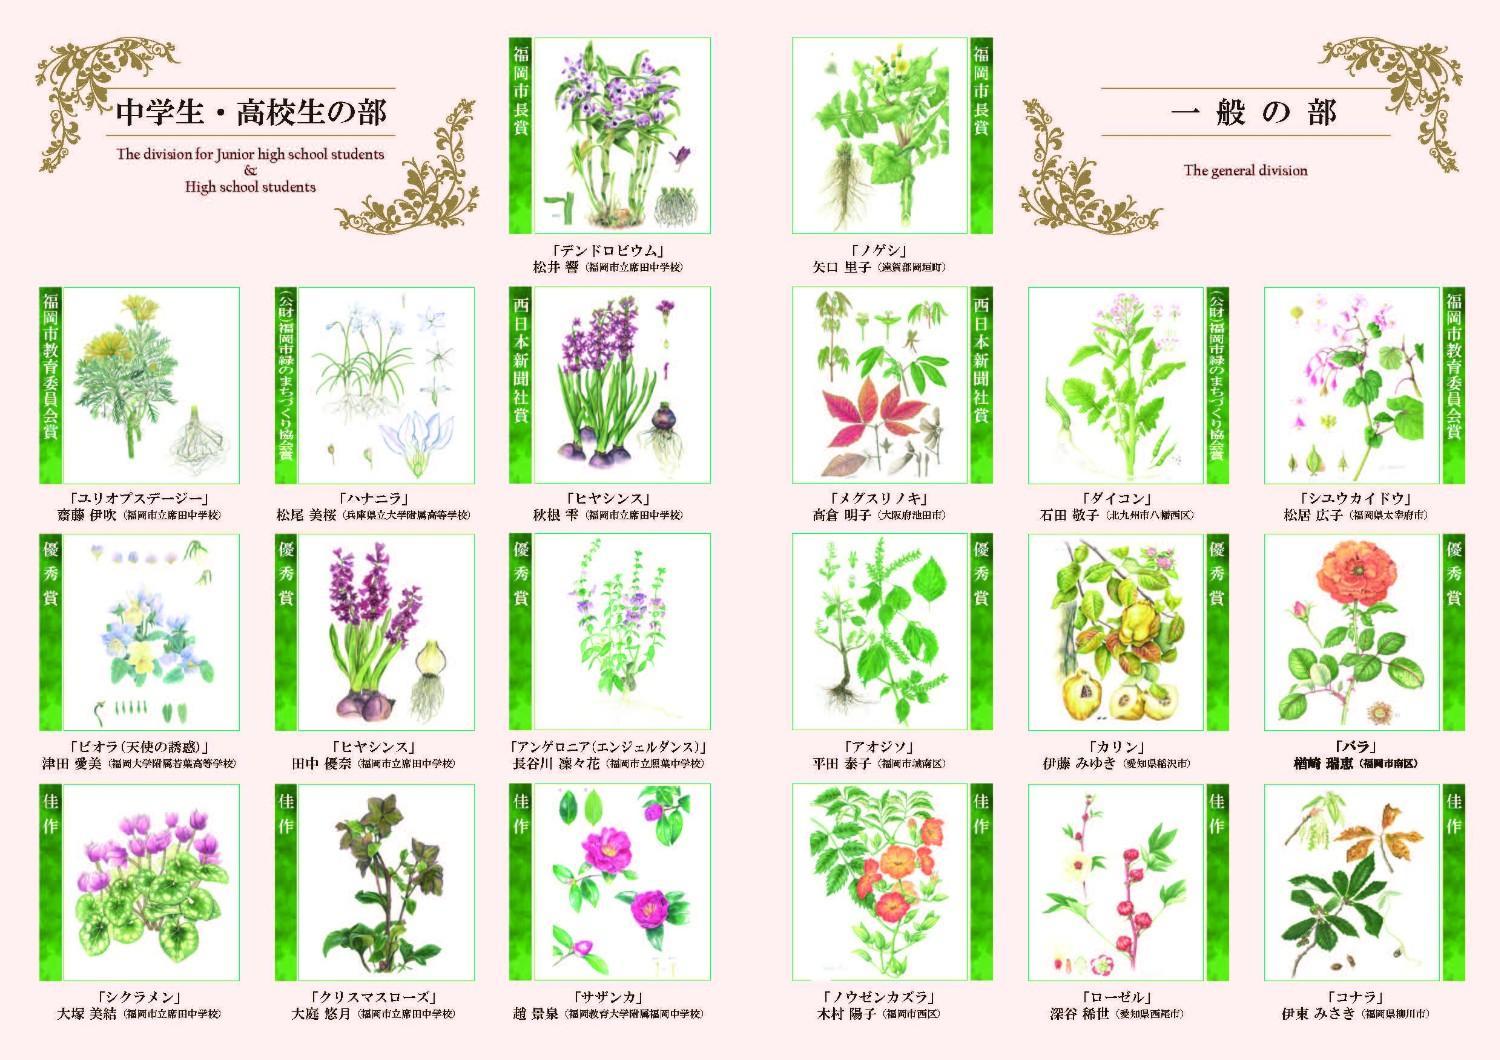 第28回福岡市植物園植物画コンクール入賞作品が決定しました。